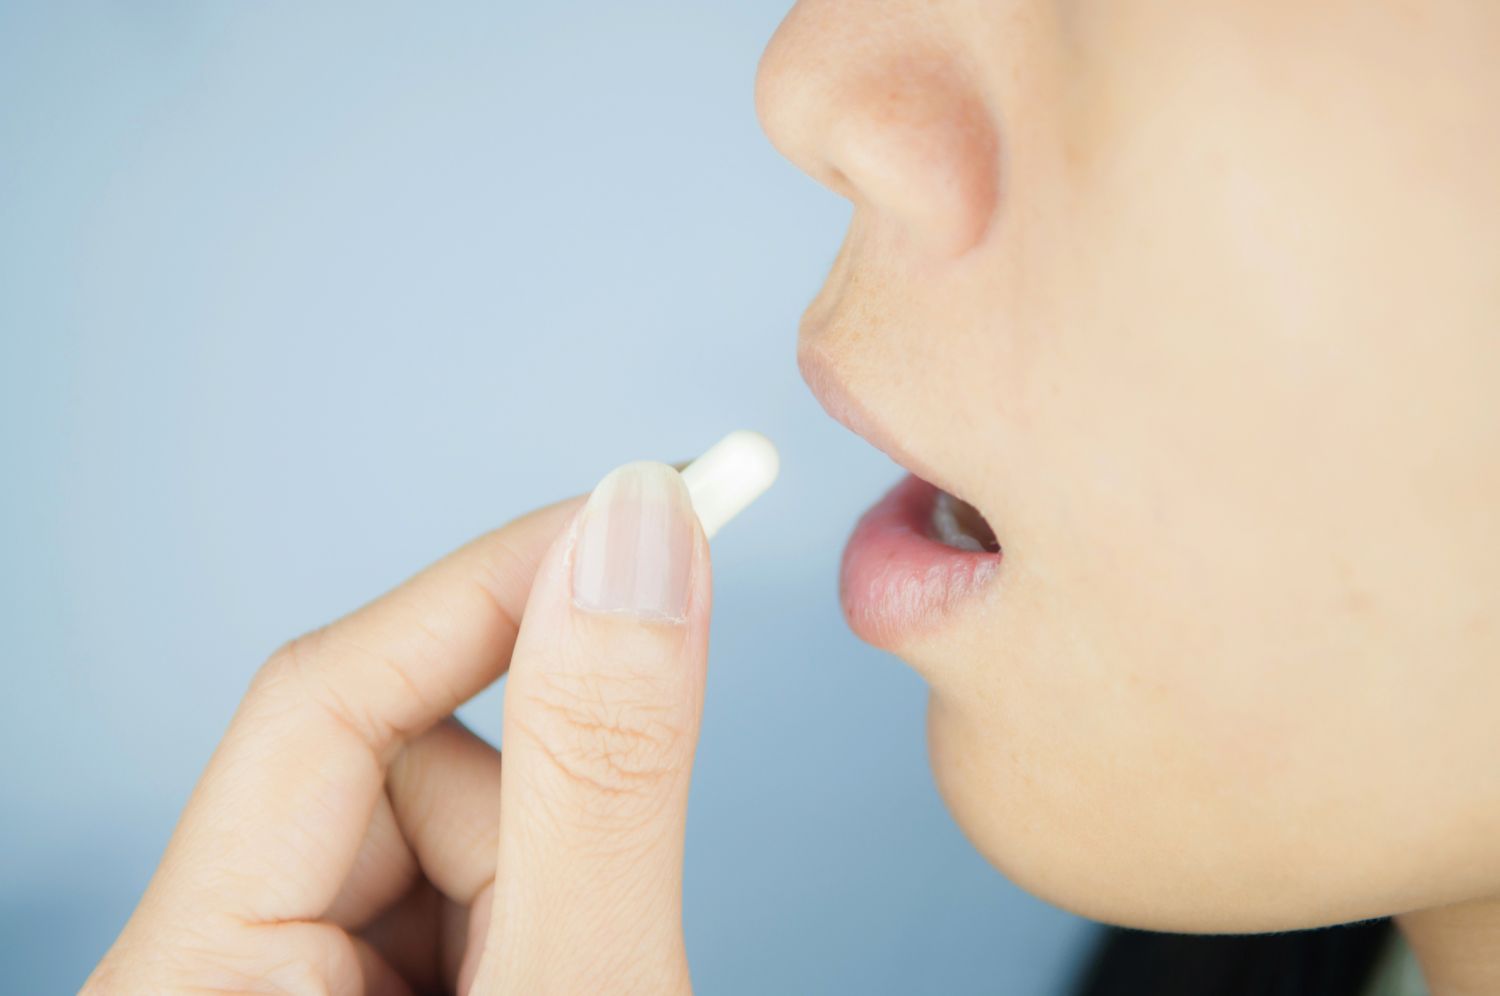  Eine Frau führt eine Tablette zu ihrem Mund. Thema: Frauenbeschwerden